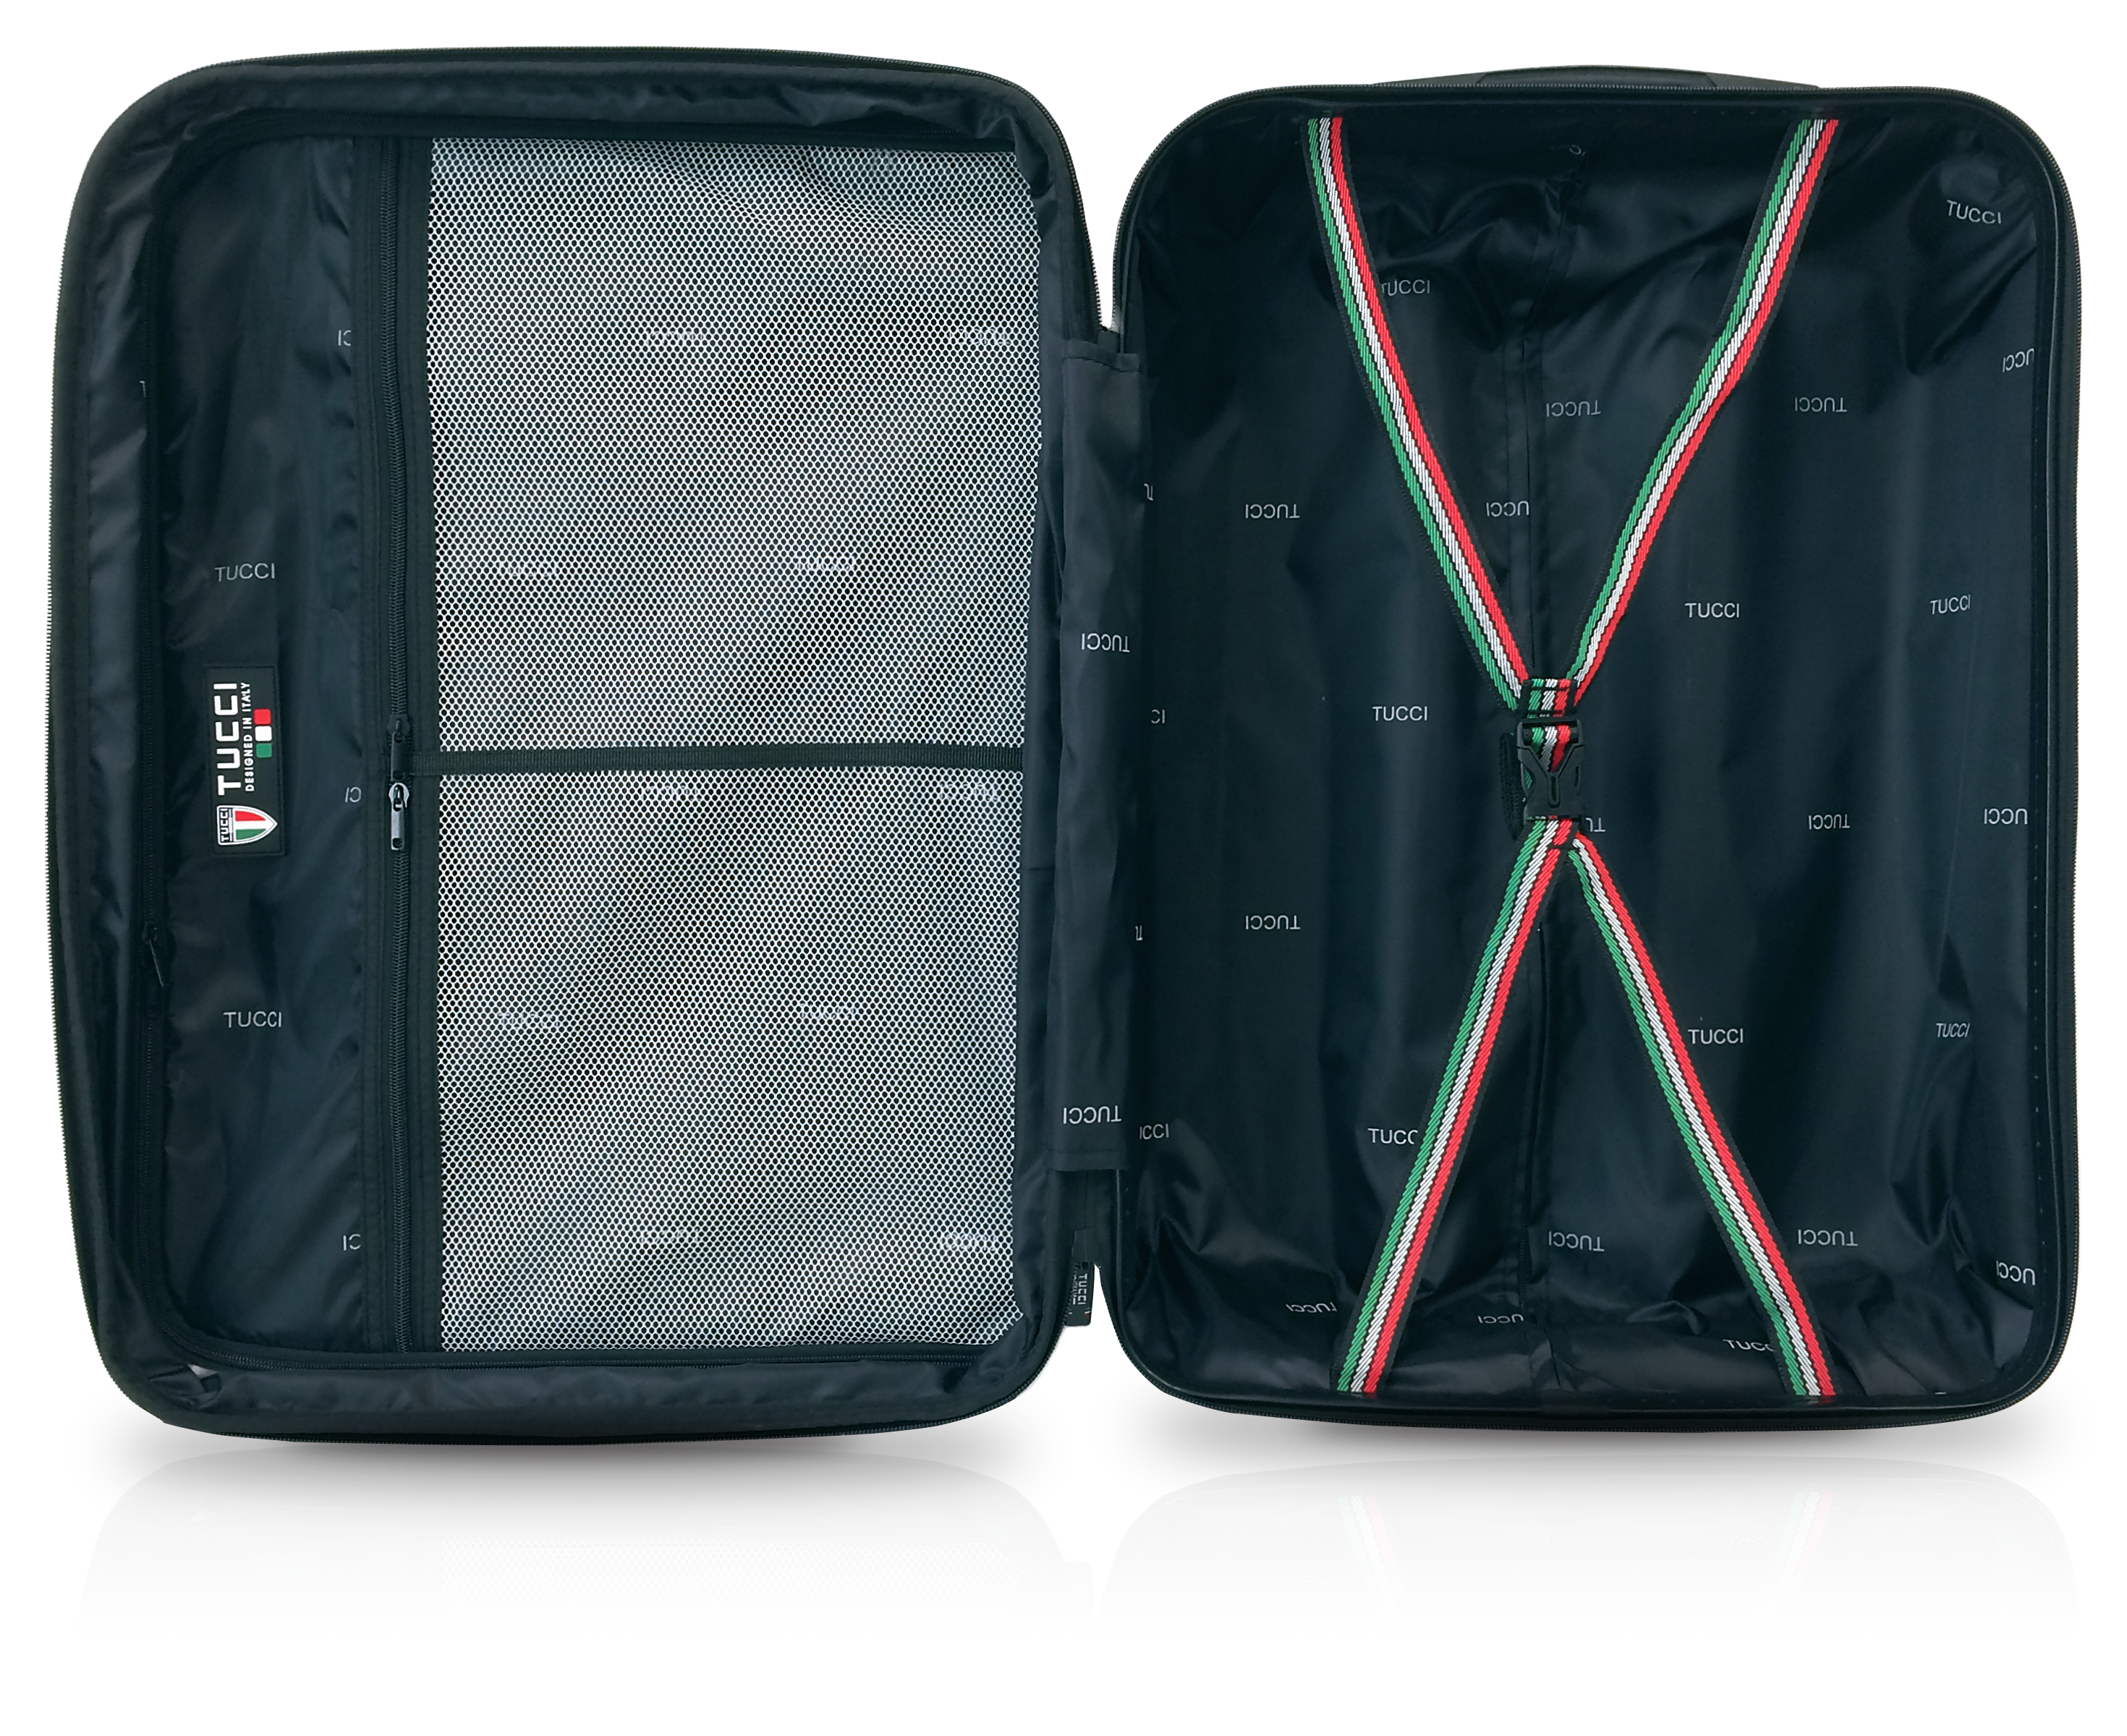 TUCCI BORDO ABS 3 PC (20", 24", 28") Travel Luggage Set